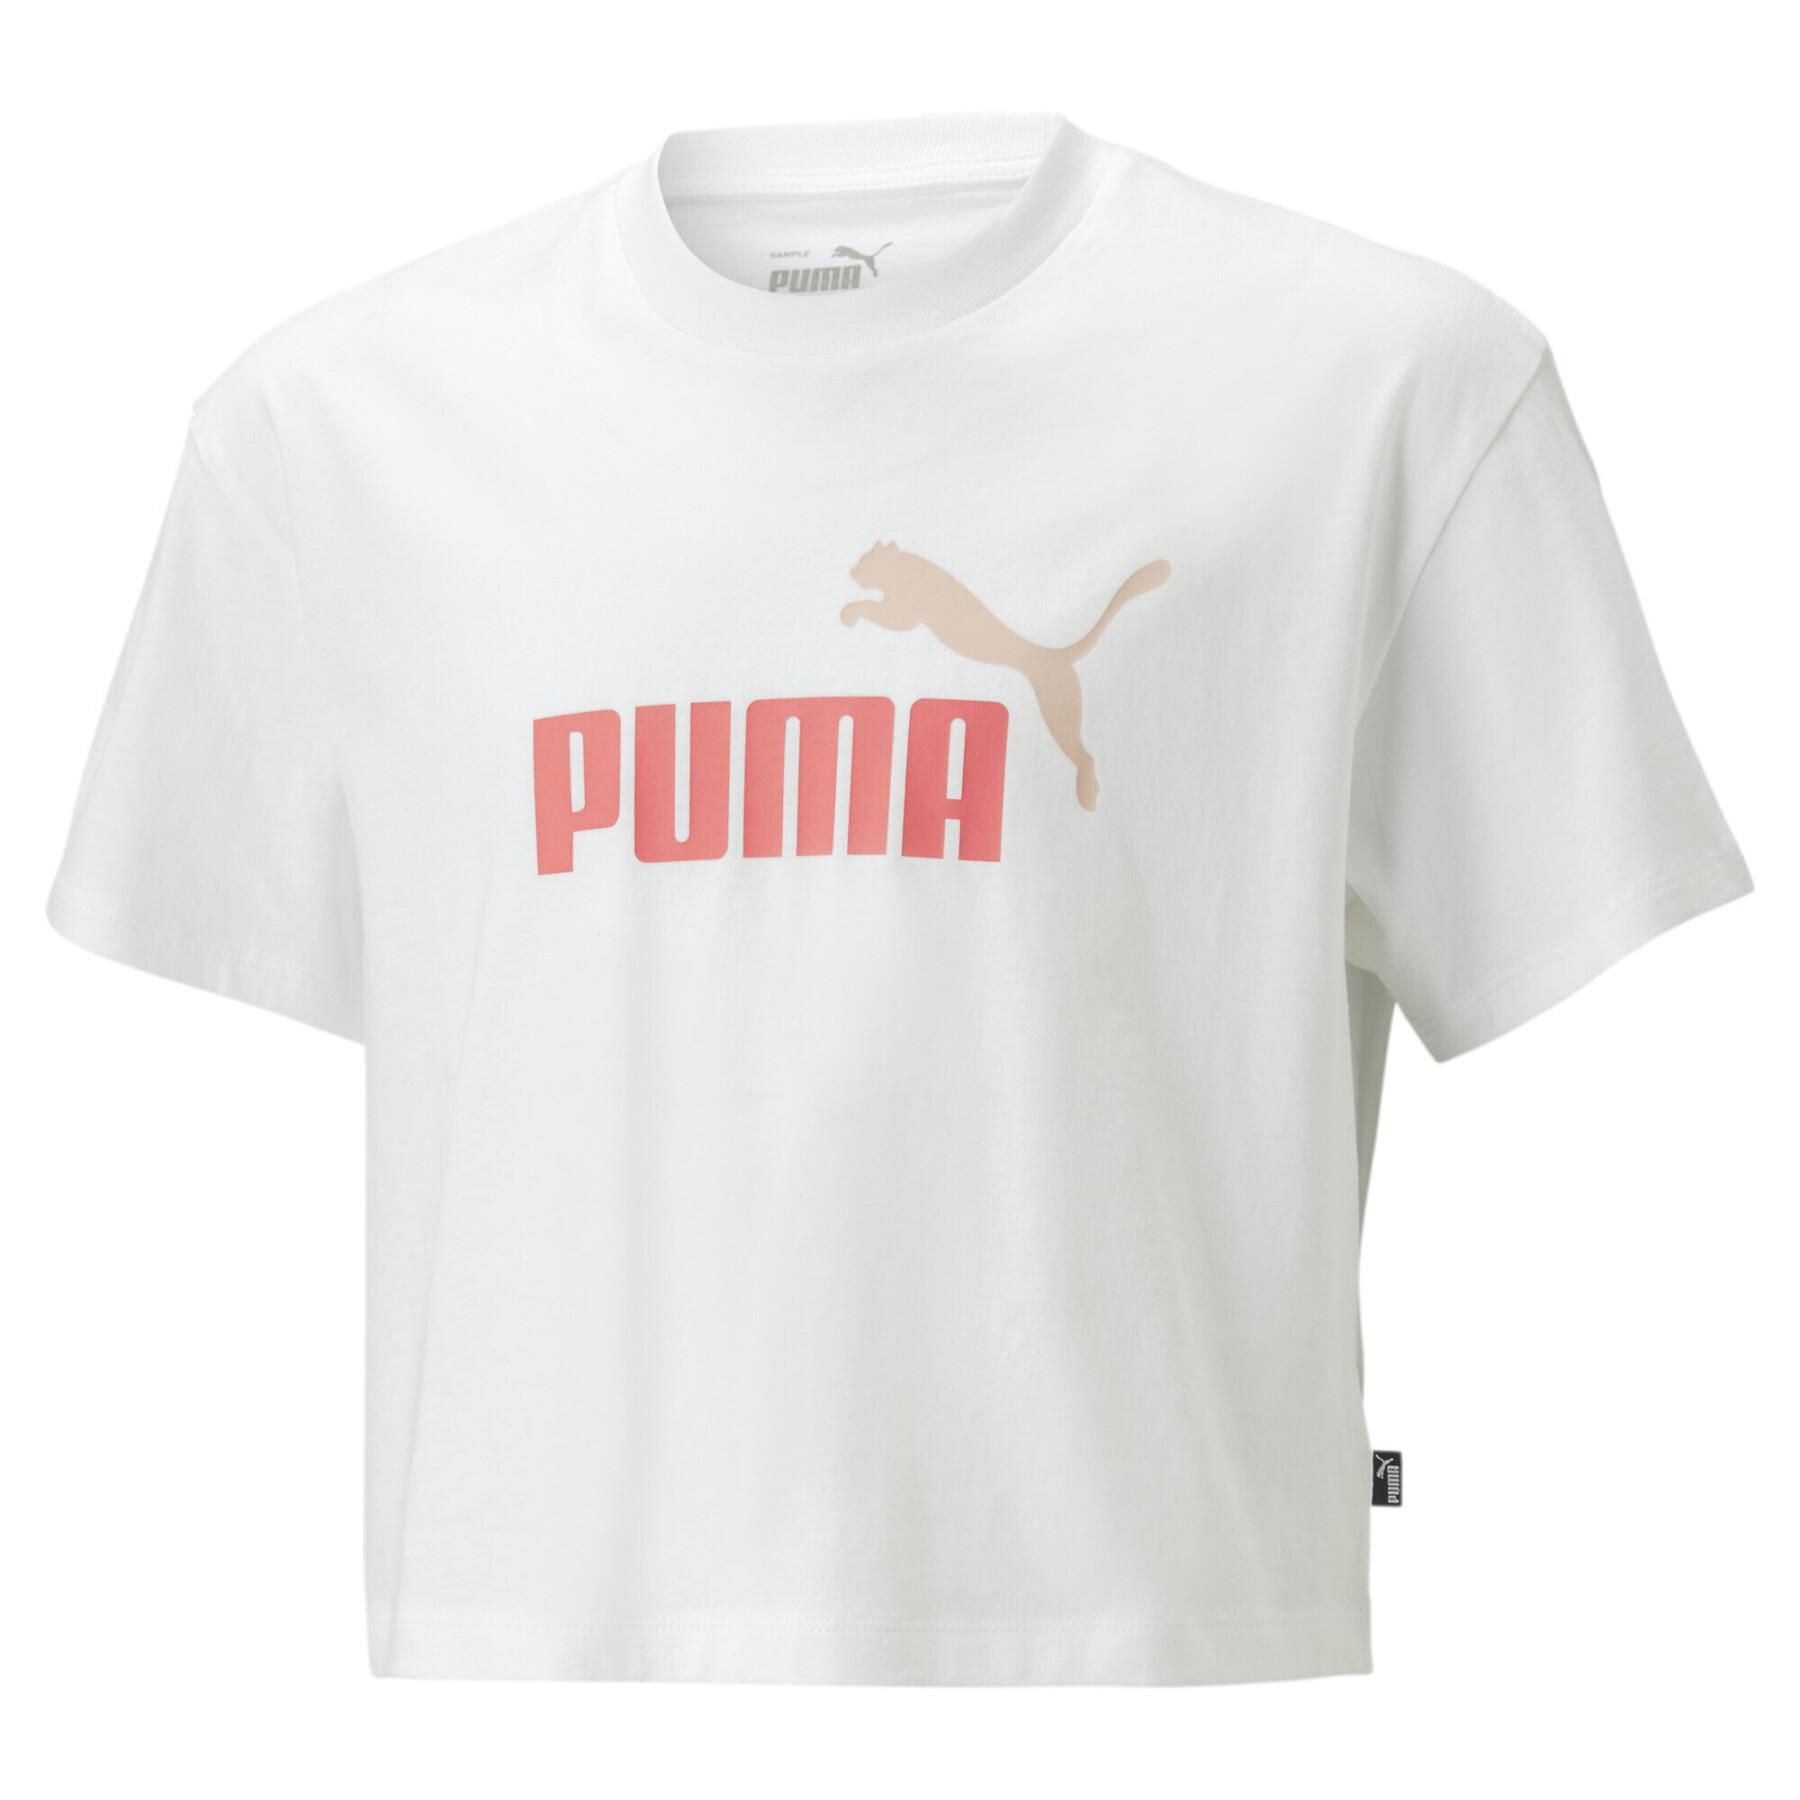 T-shirt de rapariga Puma Girls Logo Cropped